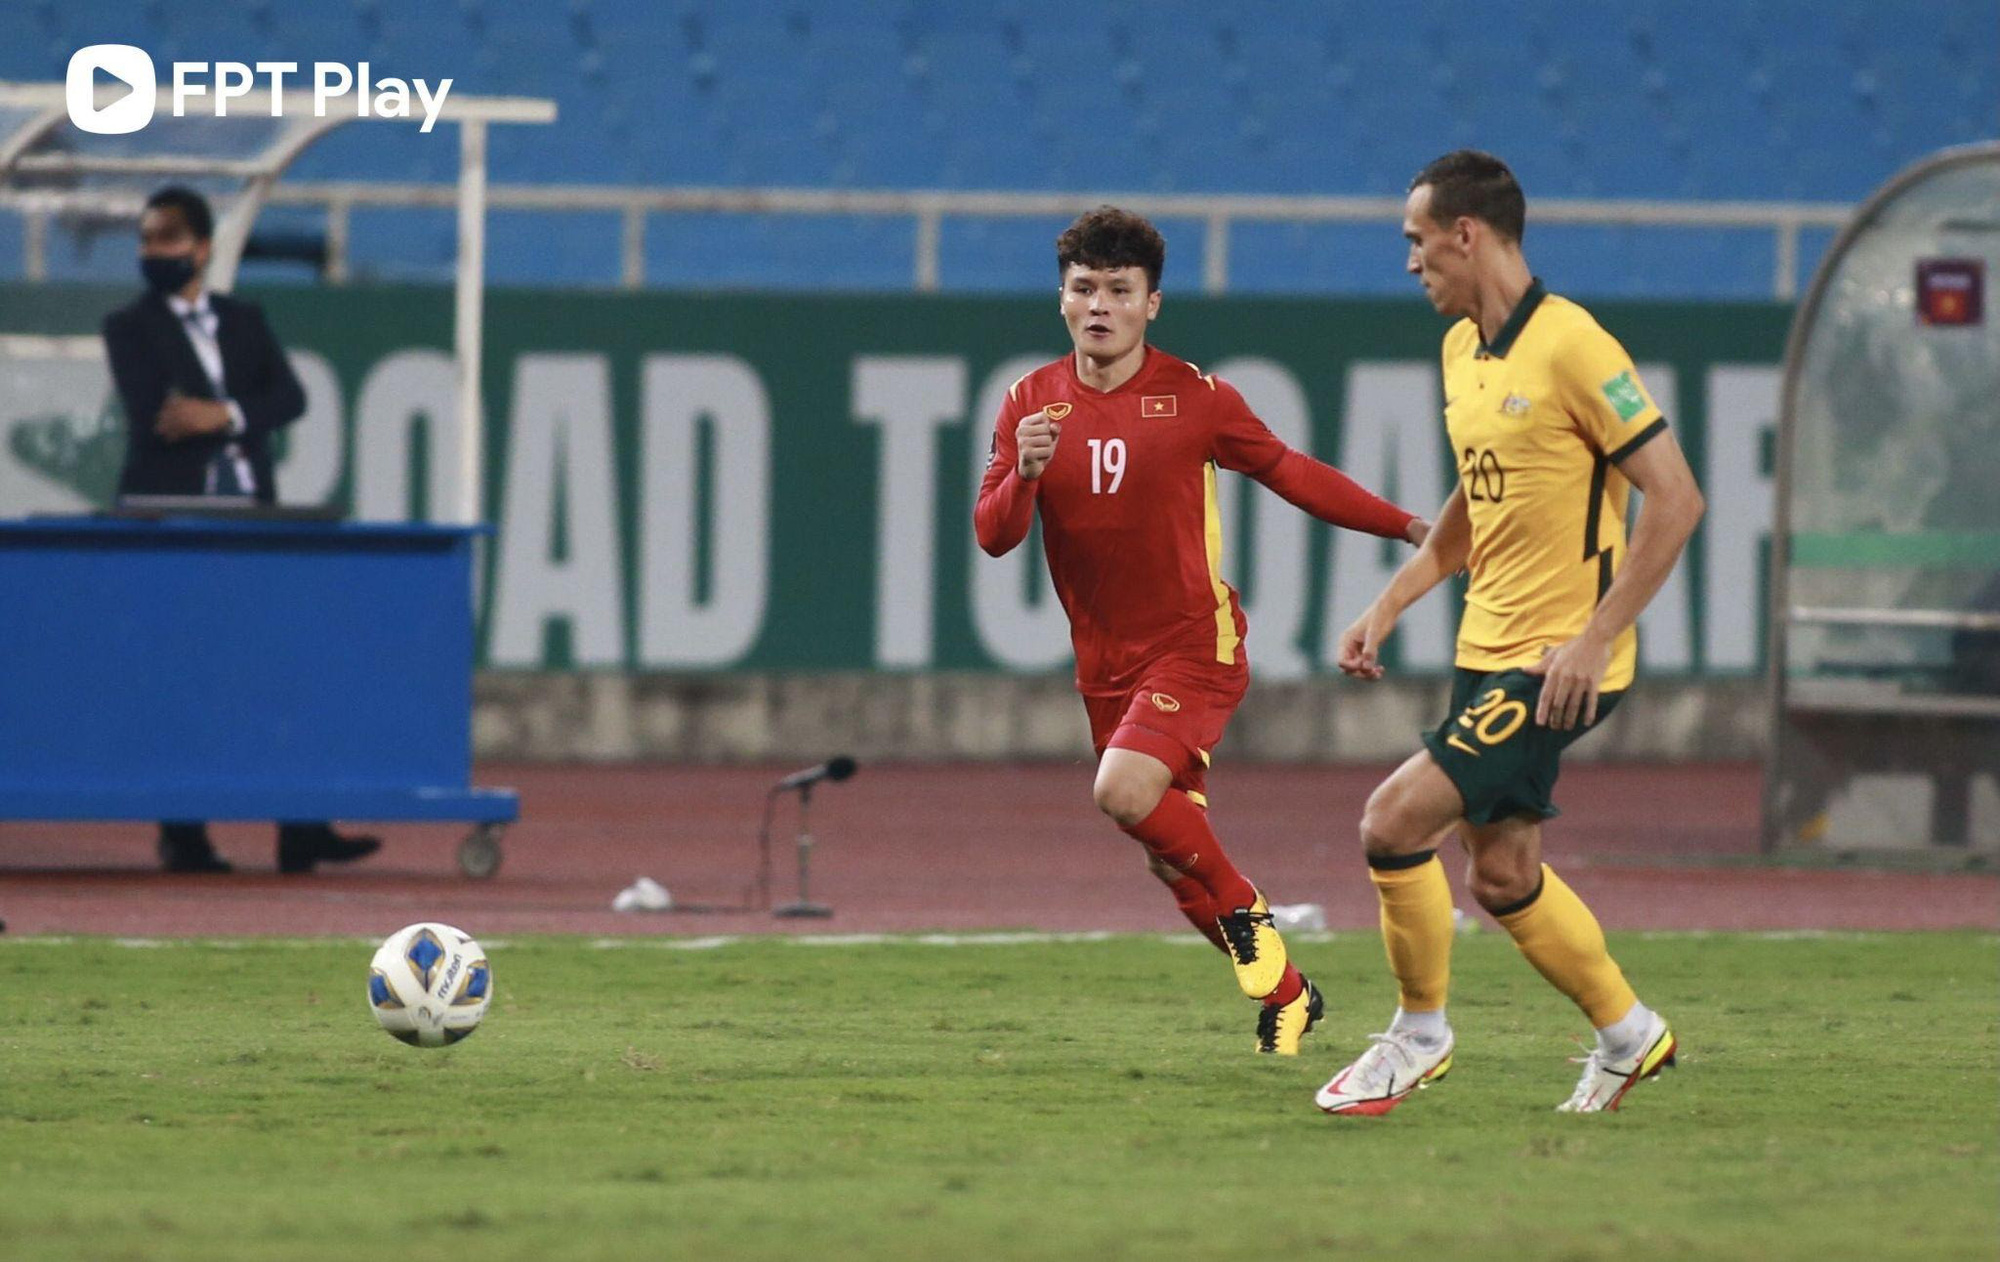 HLV Park Hang Seo phá lệ, tuyển Việt Nam chơi tấn công trước Trung Quốc - Ảnh 2.